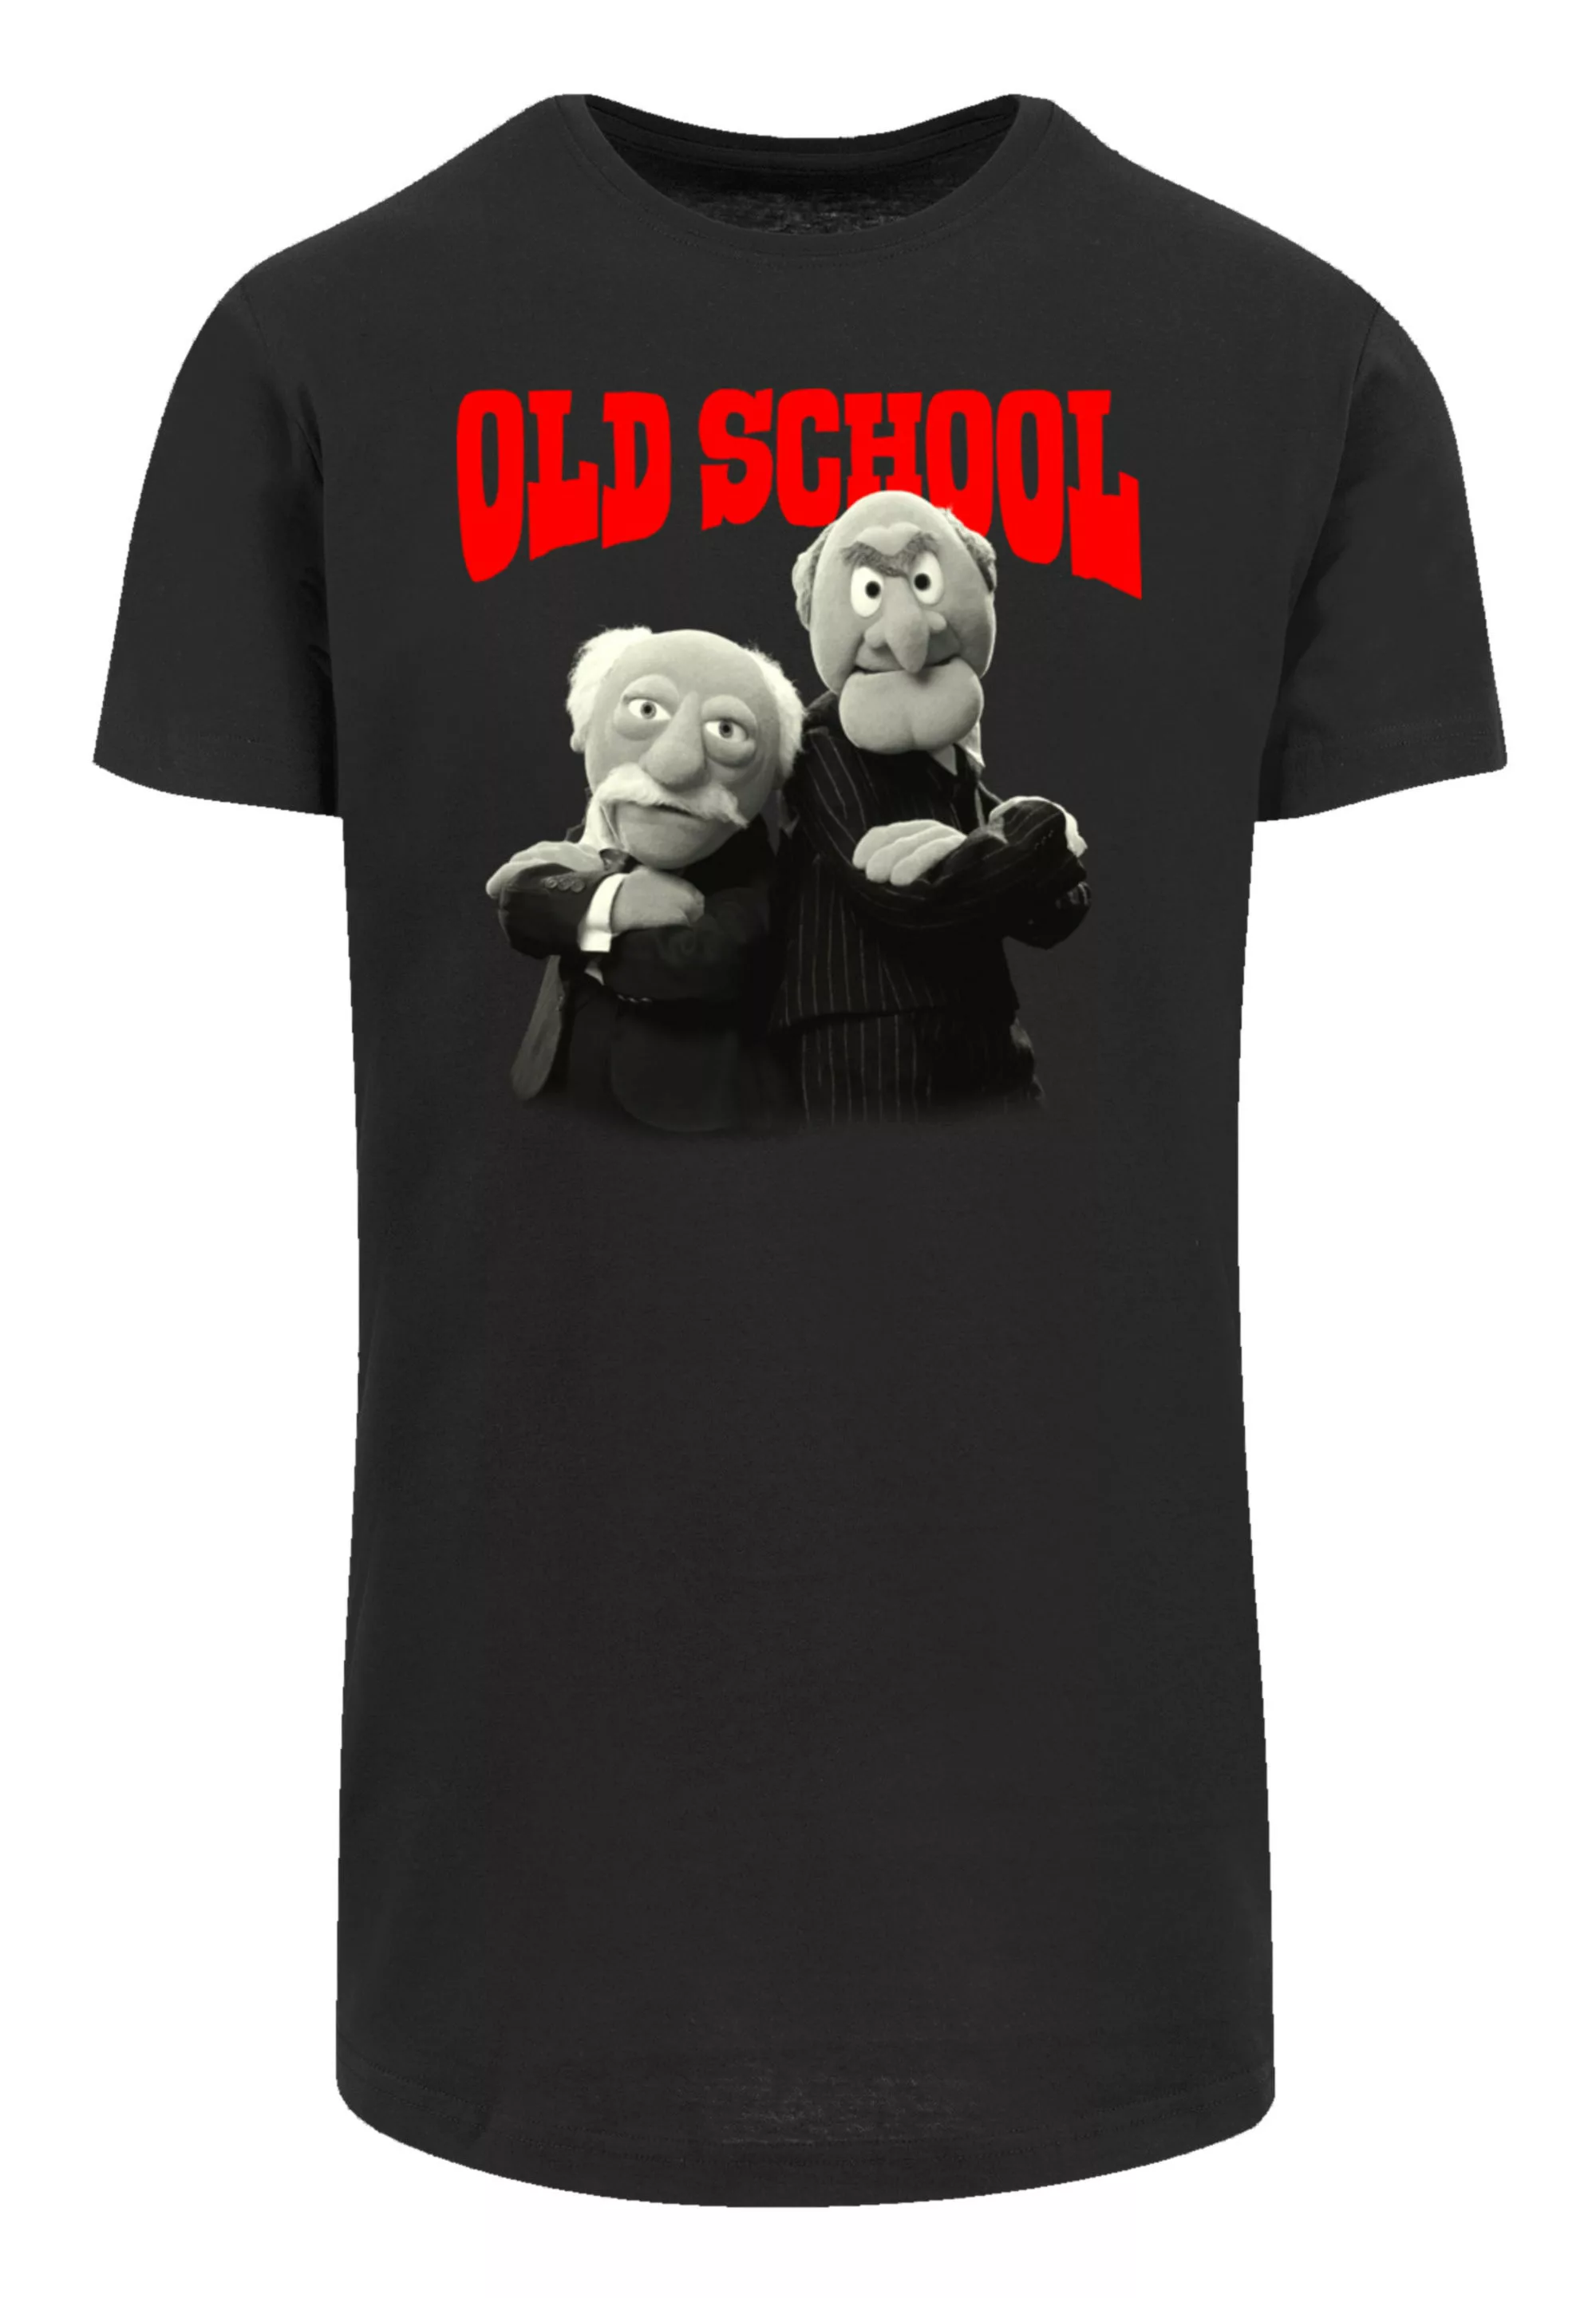 F4NT4STIC T-Shirt "Disney Muppets School Special", Premium Qualität günstig online kaufen